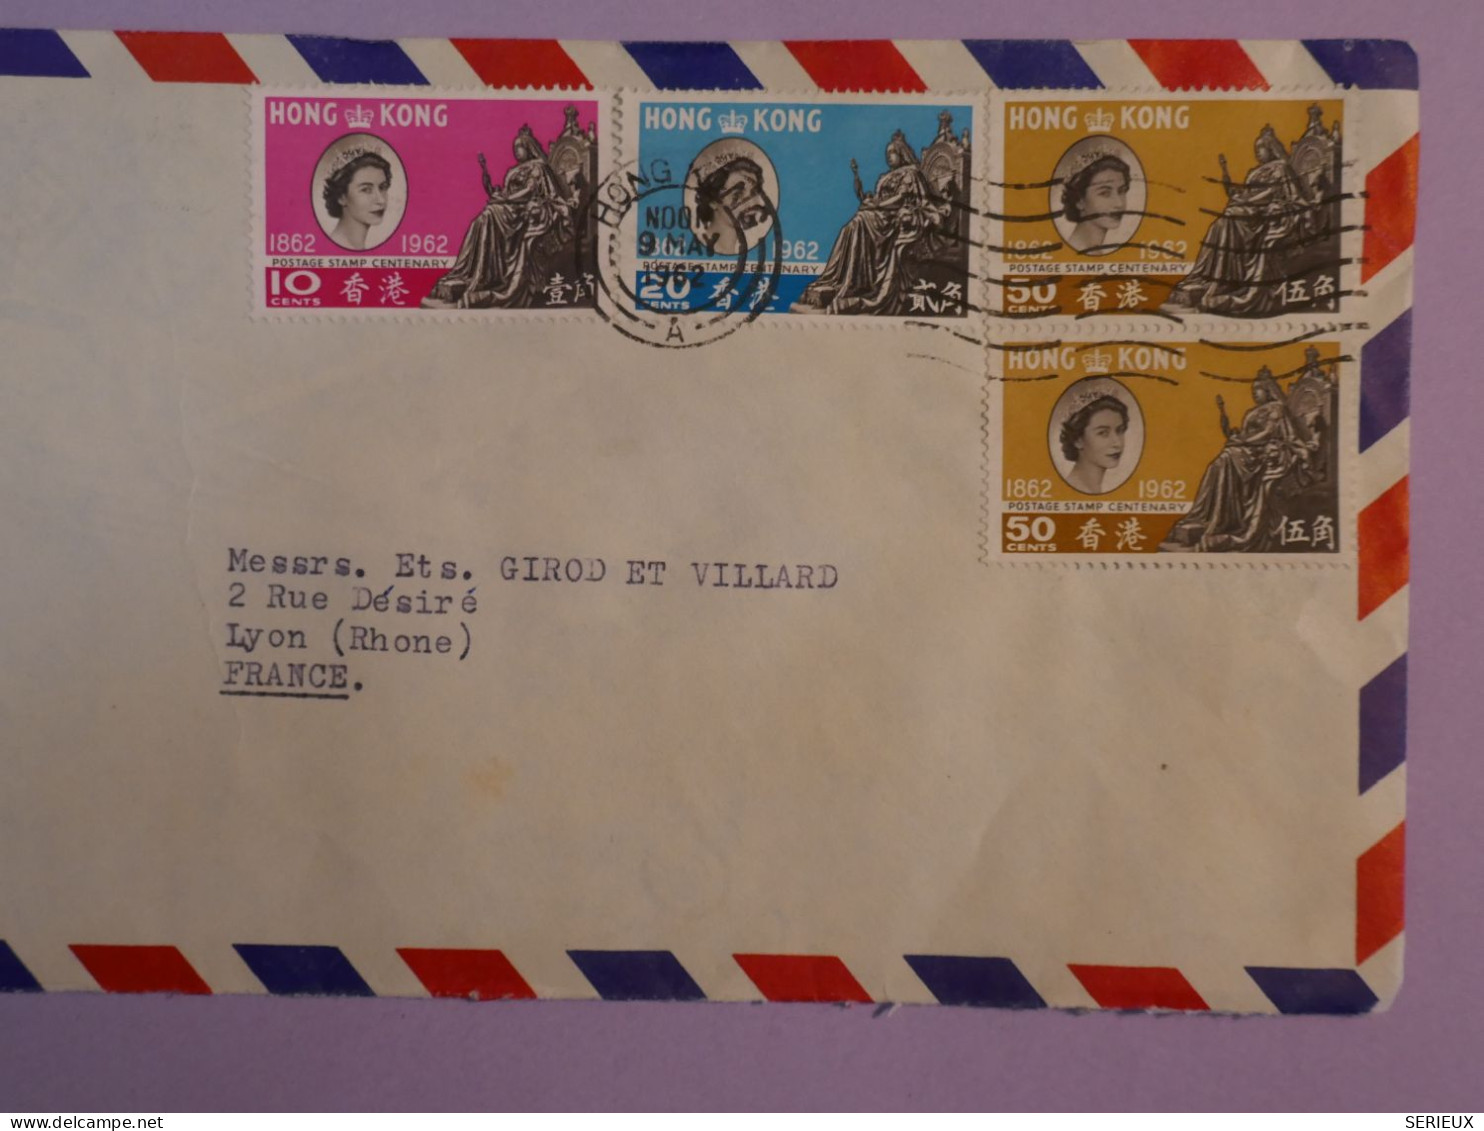 DE3 HONG KONG  CHINA  BELLE  LETTRE  FDC 1968  A  LYON FRANCE + QUEEN ELISABETH   +AFFR. PLAISANT+++ - Storia Postale